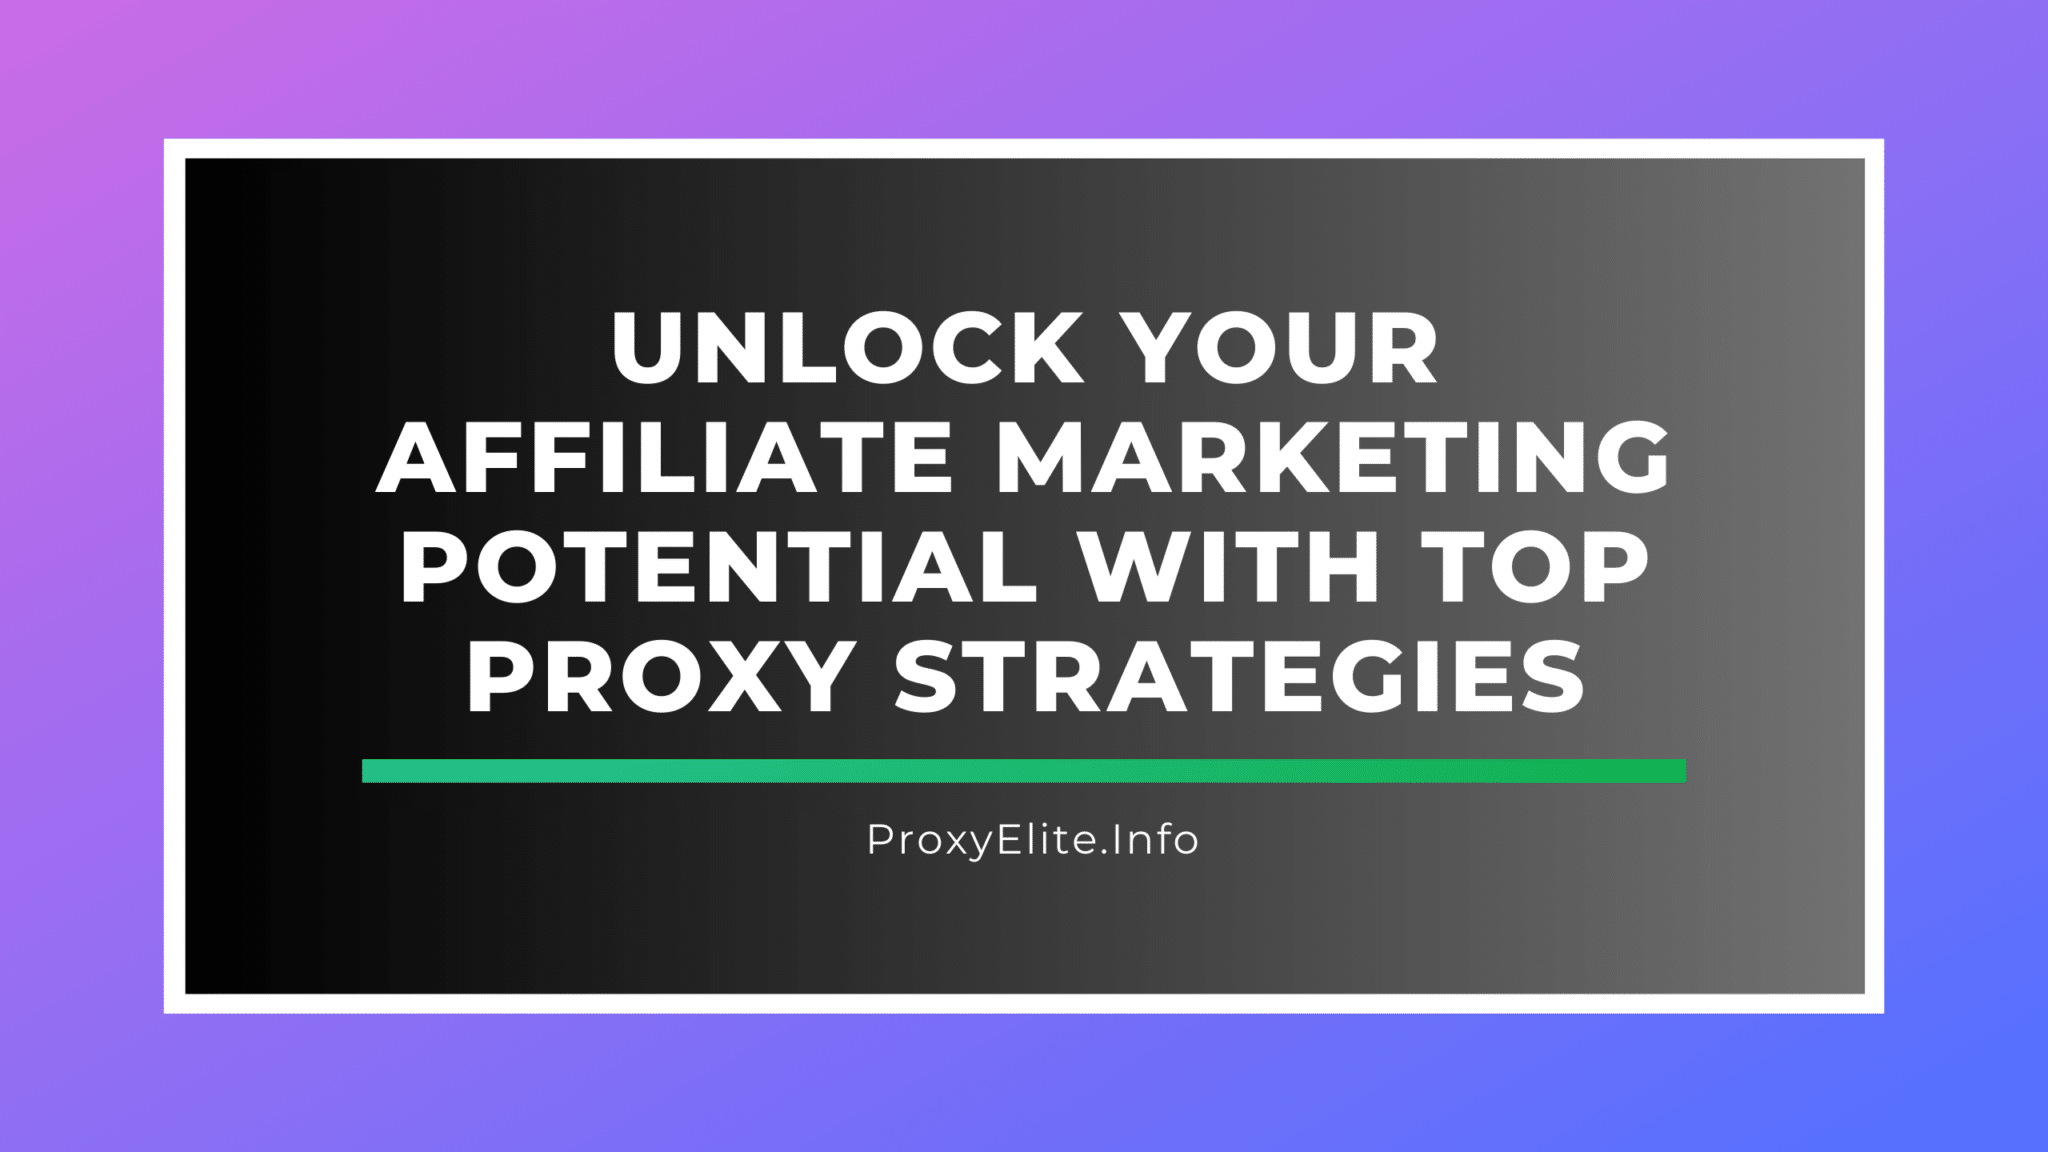 Desbloqueie seu potencial de marketing de afiliados com as principais estratégias de proxy